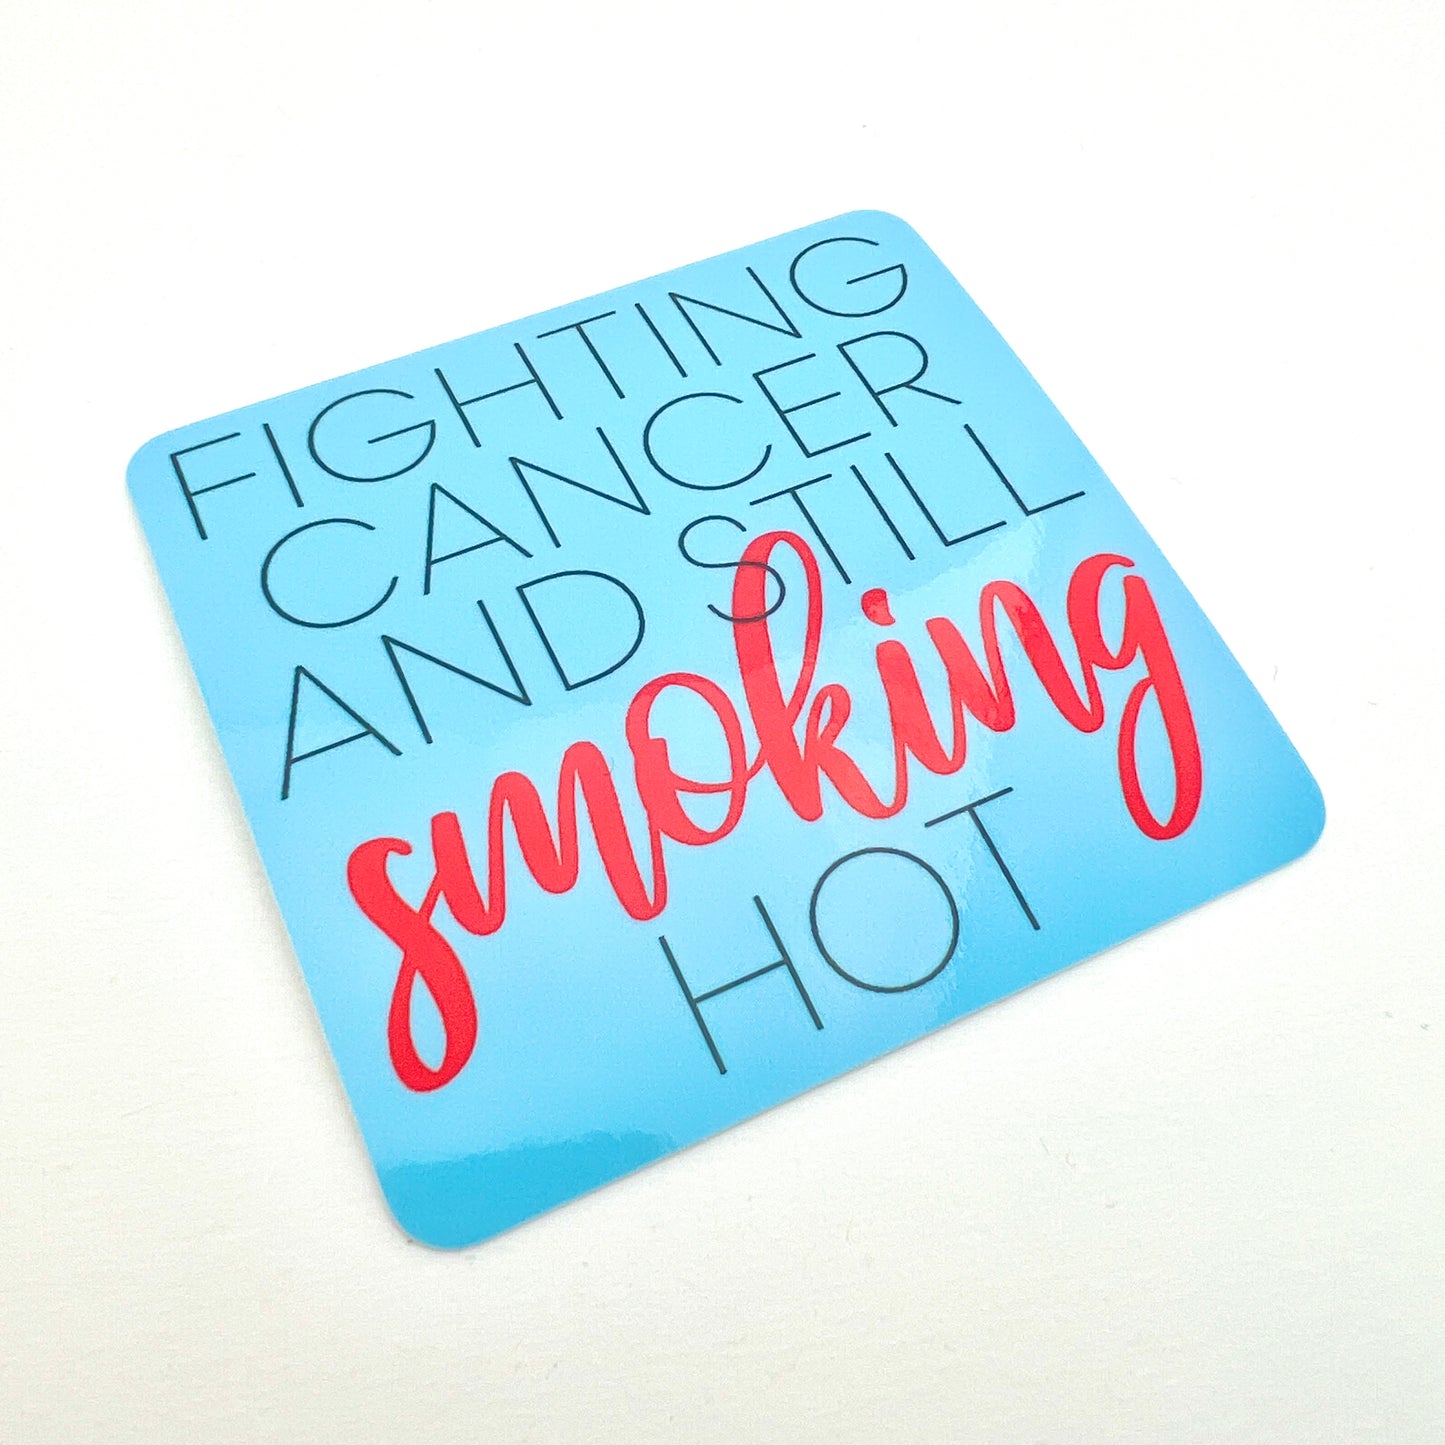 Fighting Cancer Still Smoking Hot vinyl sticker